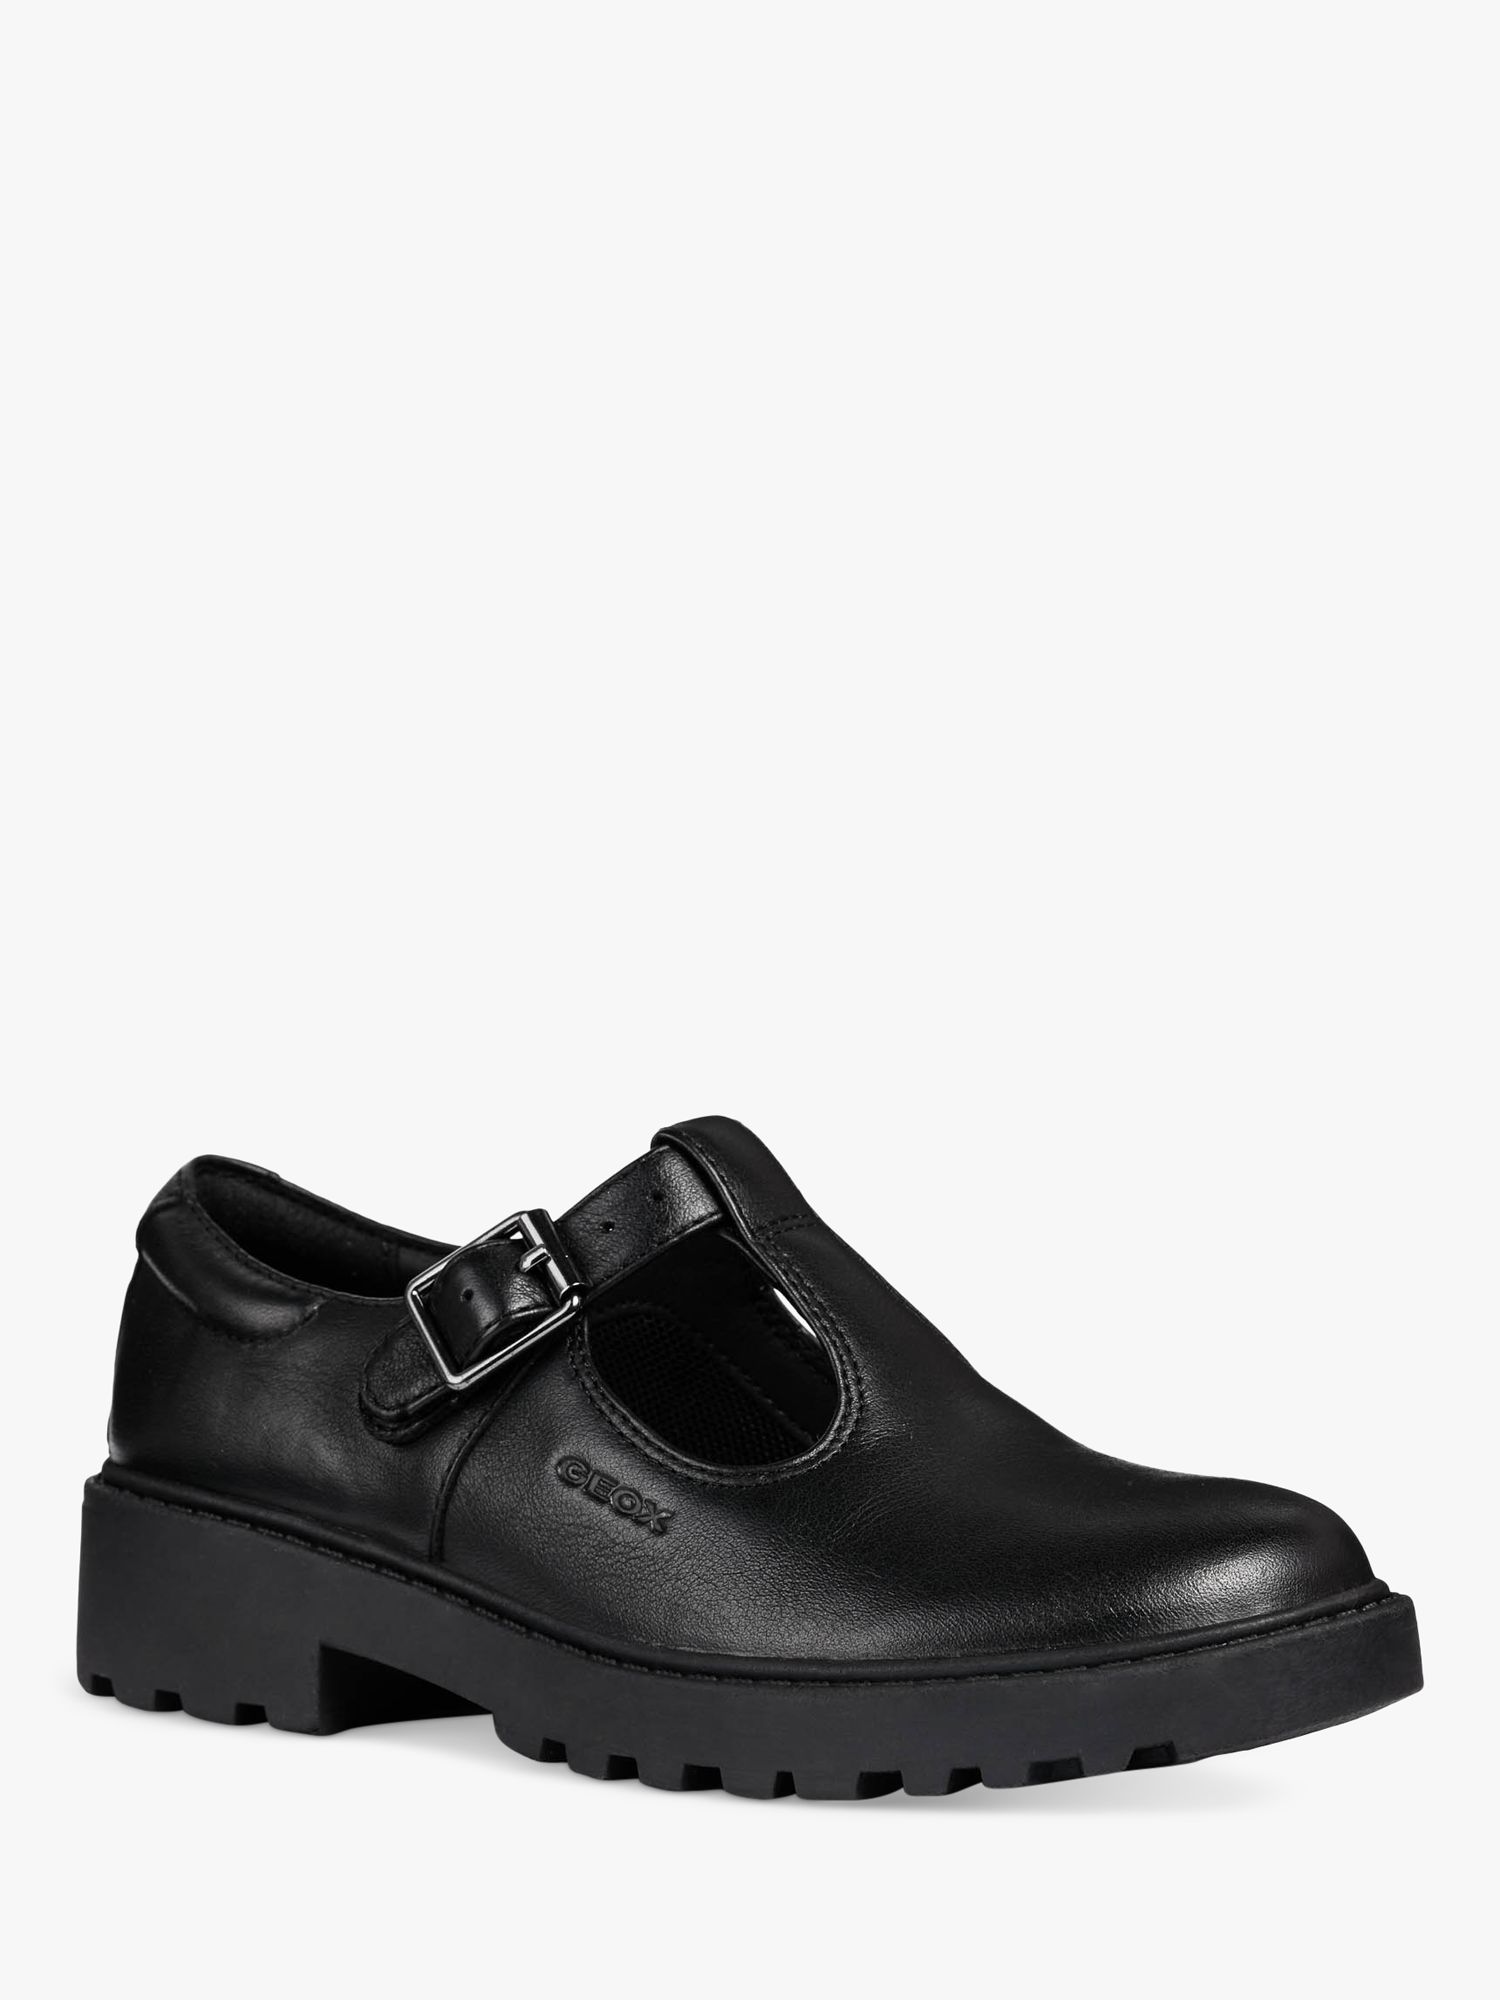 Geox Kids' Casey T-Bar School Shoes, Black, 38